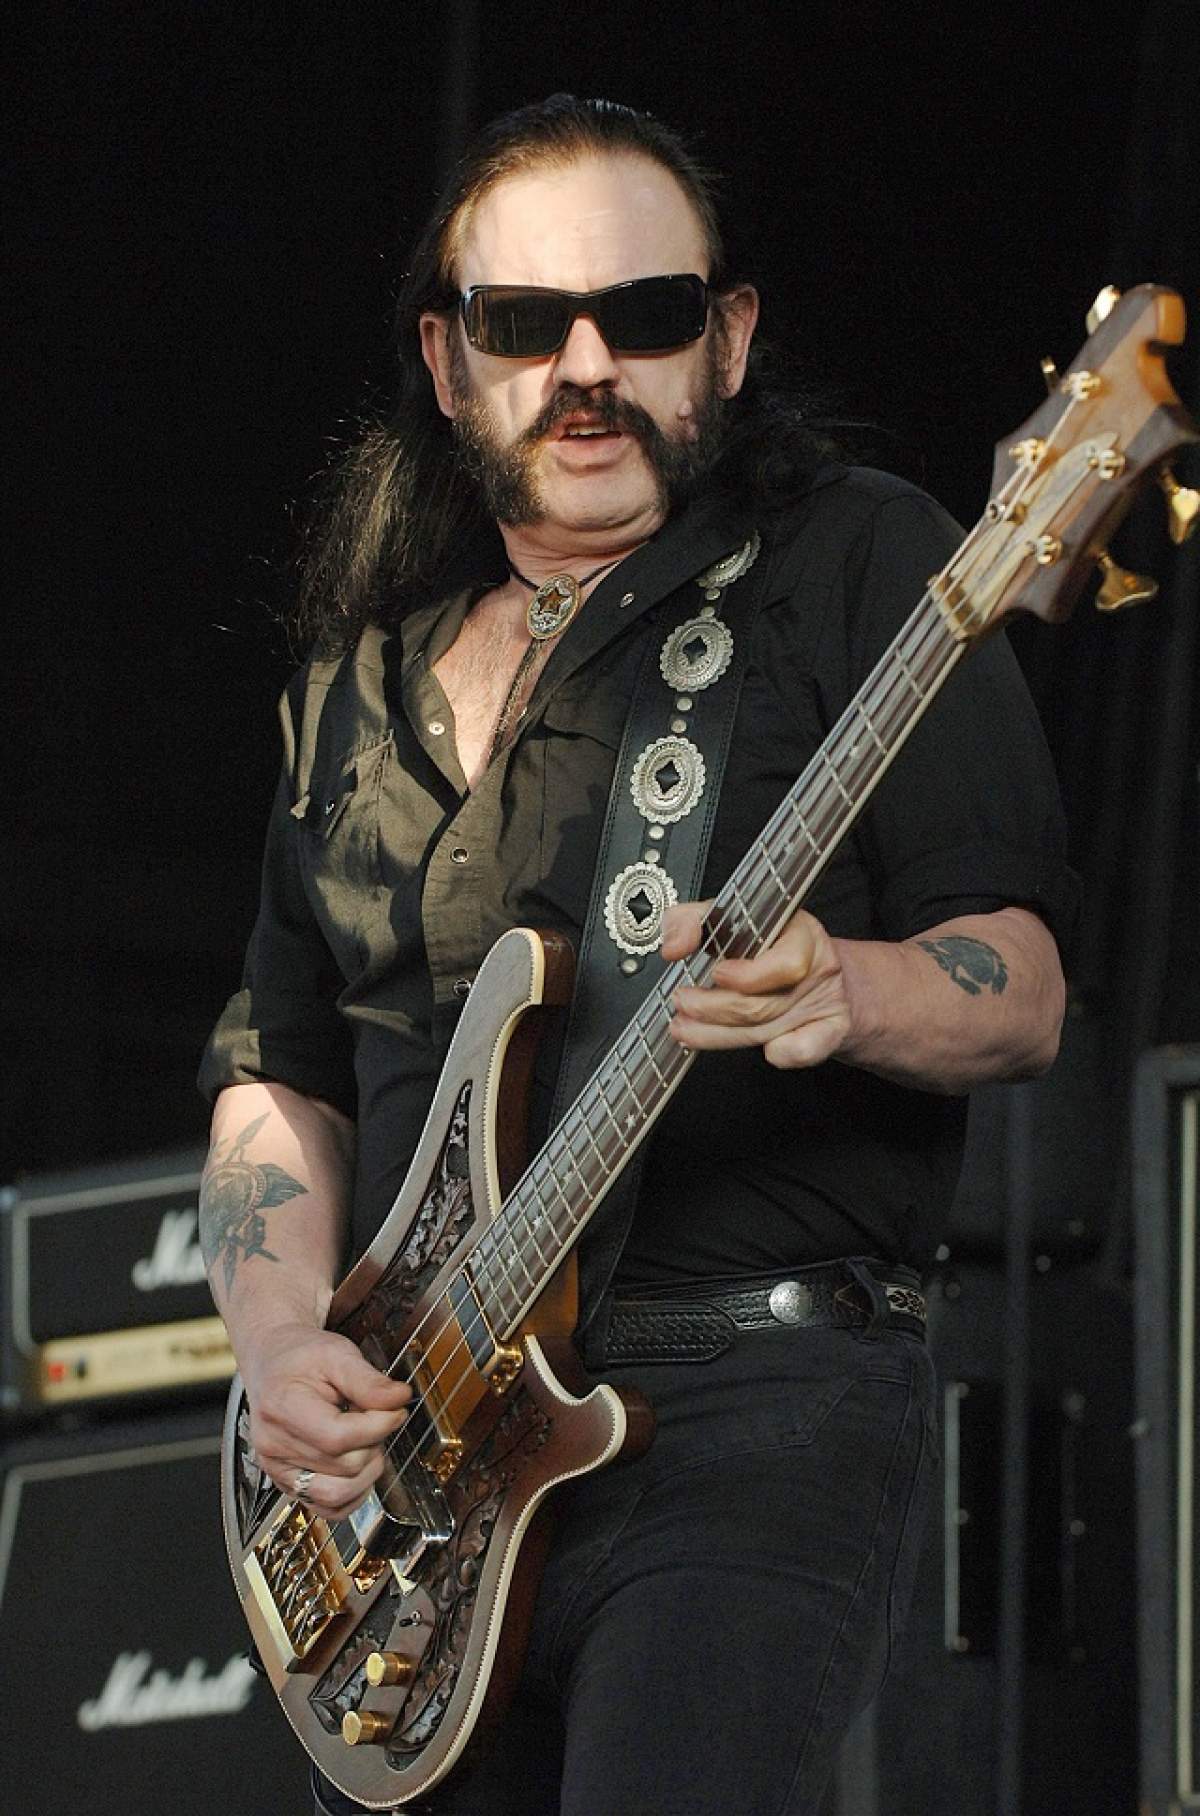 Toți fanii lui Lemmy de la Motörhead vor fi prezenți la înmormântare. Familia artistului face un lucru nemaivăzut